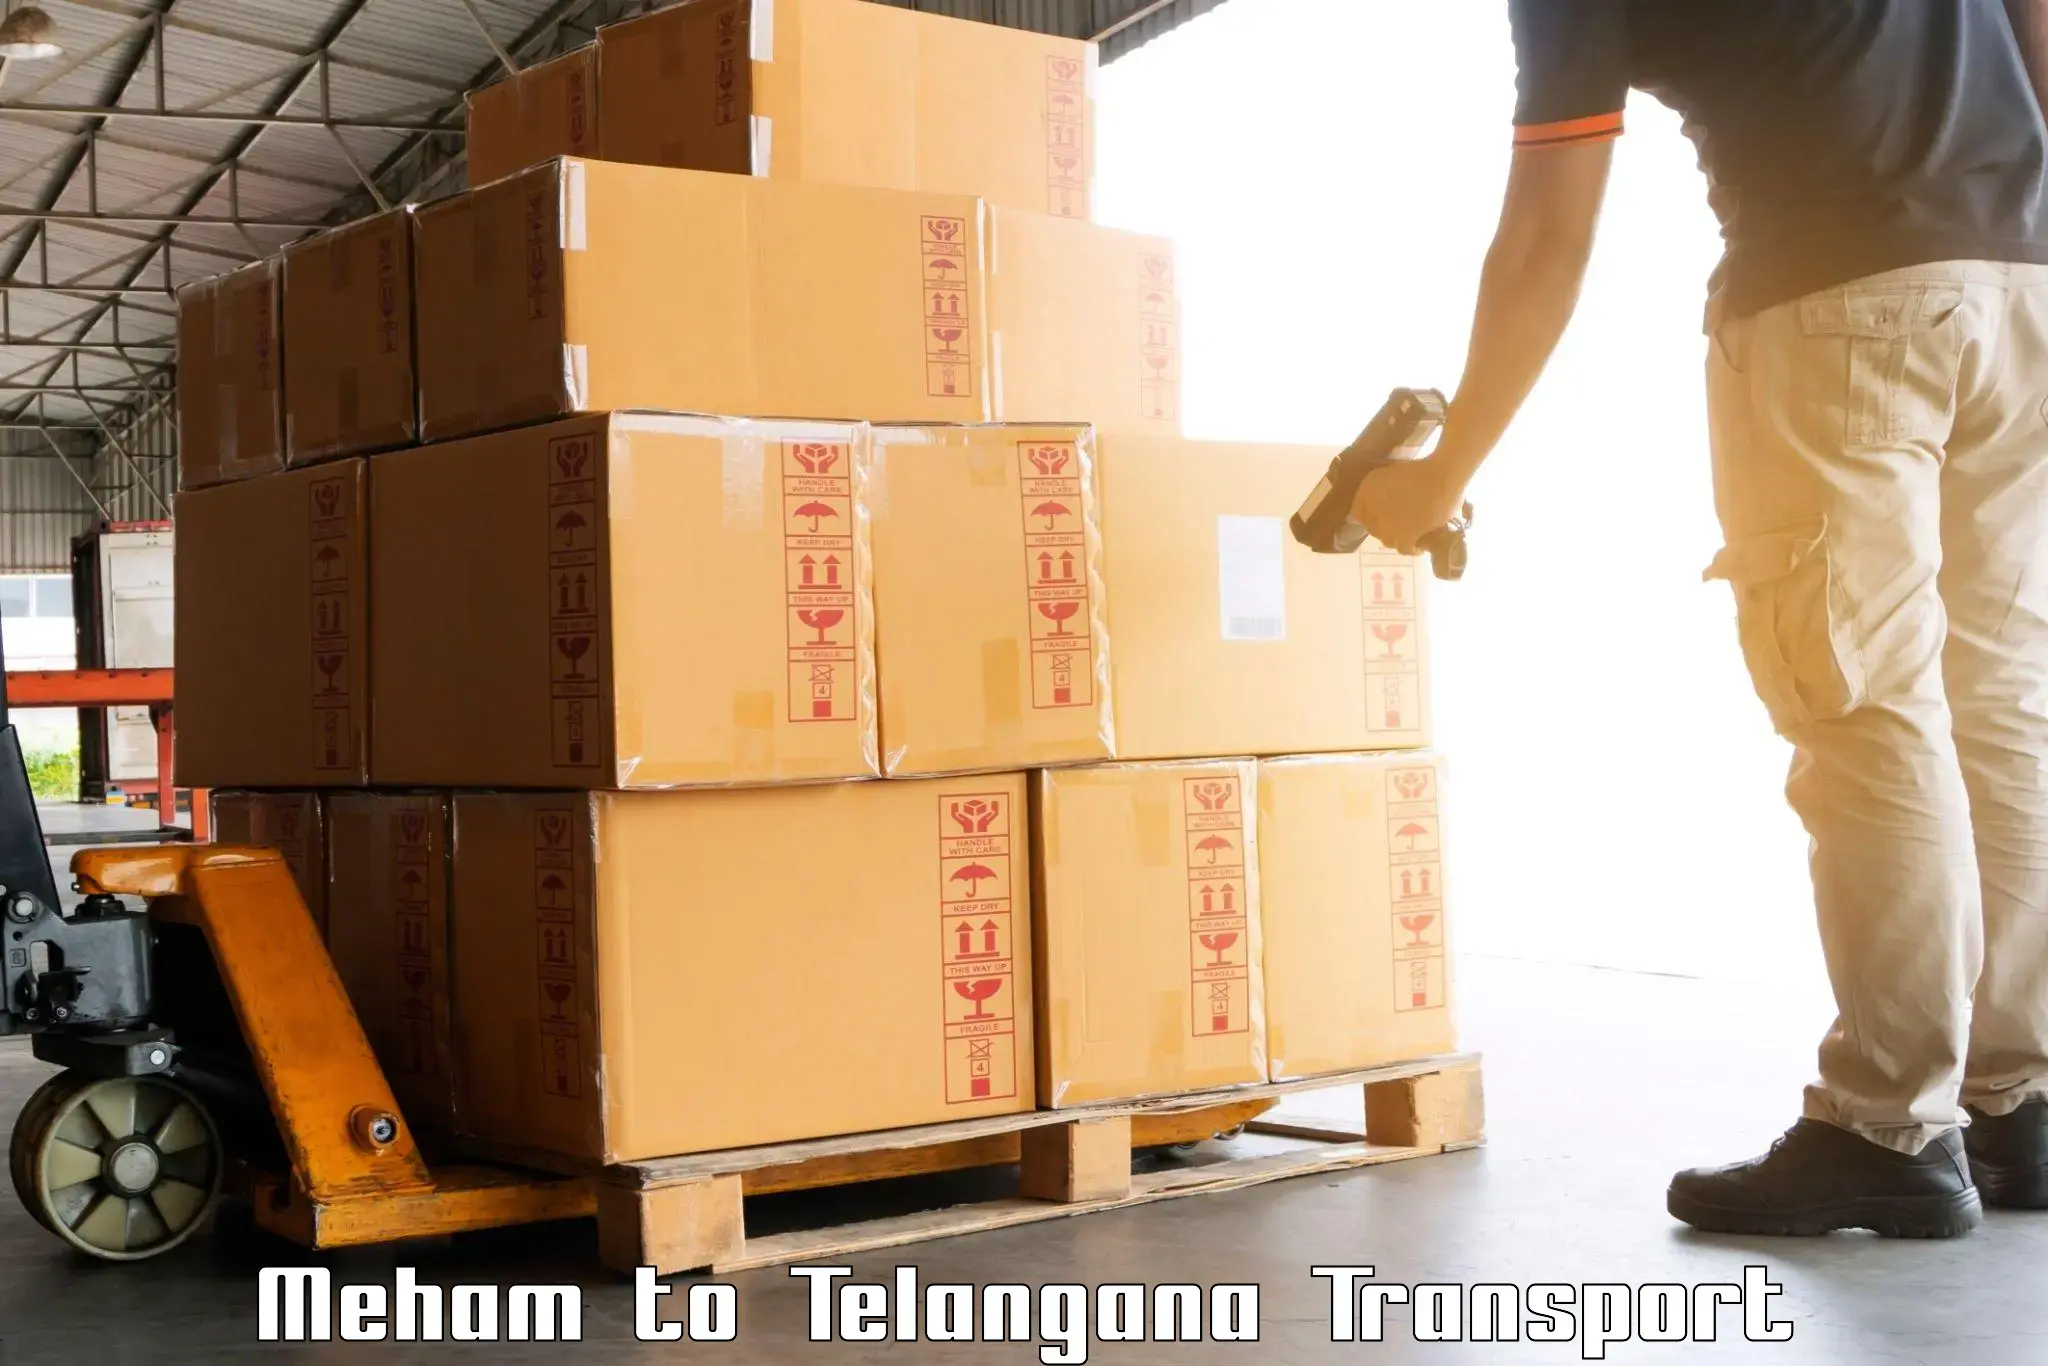 Container transport service Meham to Ibrahimpatnam